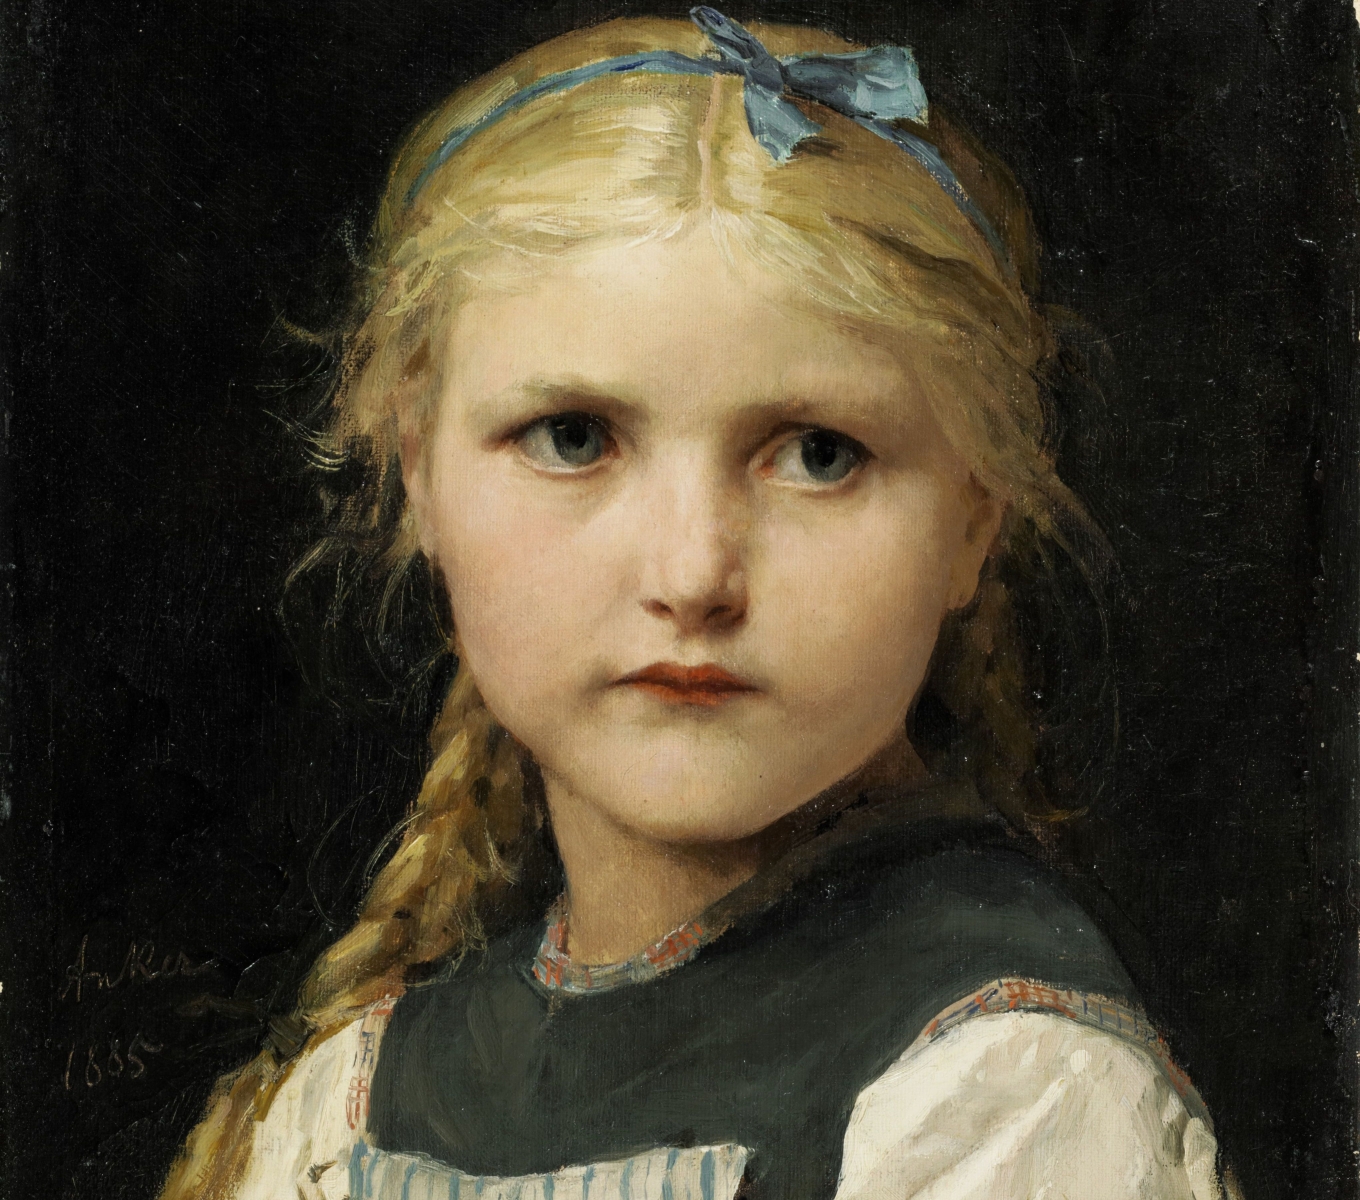 "Mädchenbildnis" (portrait de jeune fille), un tableau d'Anker datant de 1885 peint à l'huile, a été adjugé 1'426'500 de francs. 